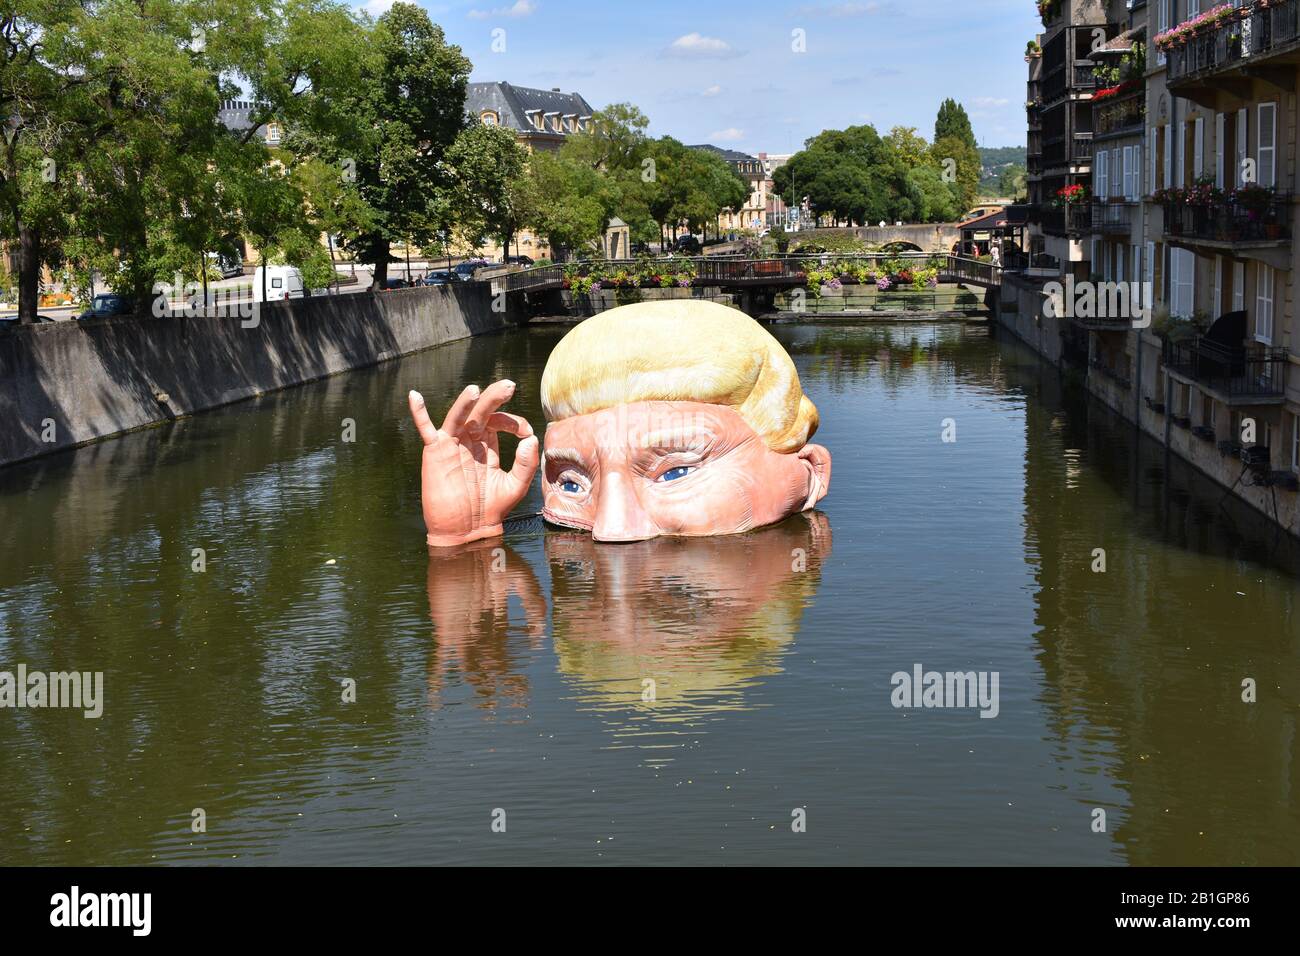 Donald Trump inflable en el río de Metz, Francia, agosto de 2019 Foto de stock